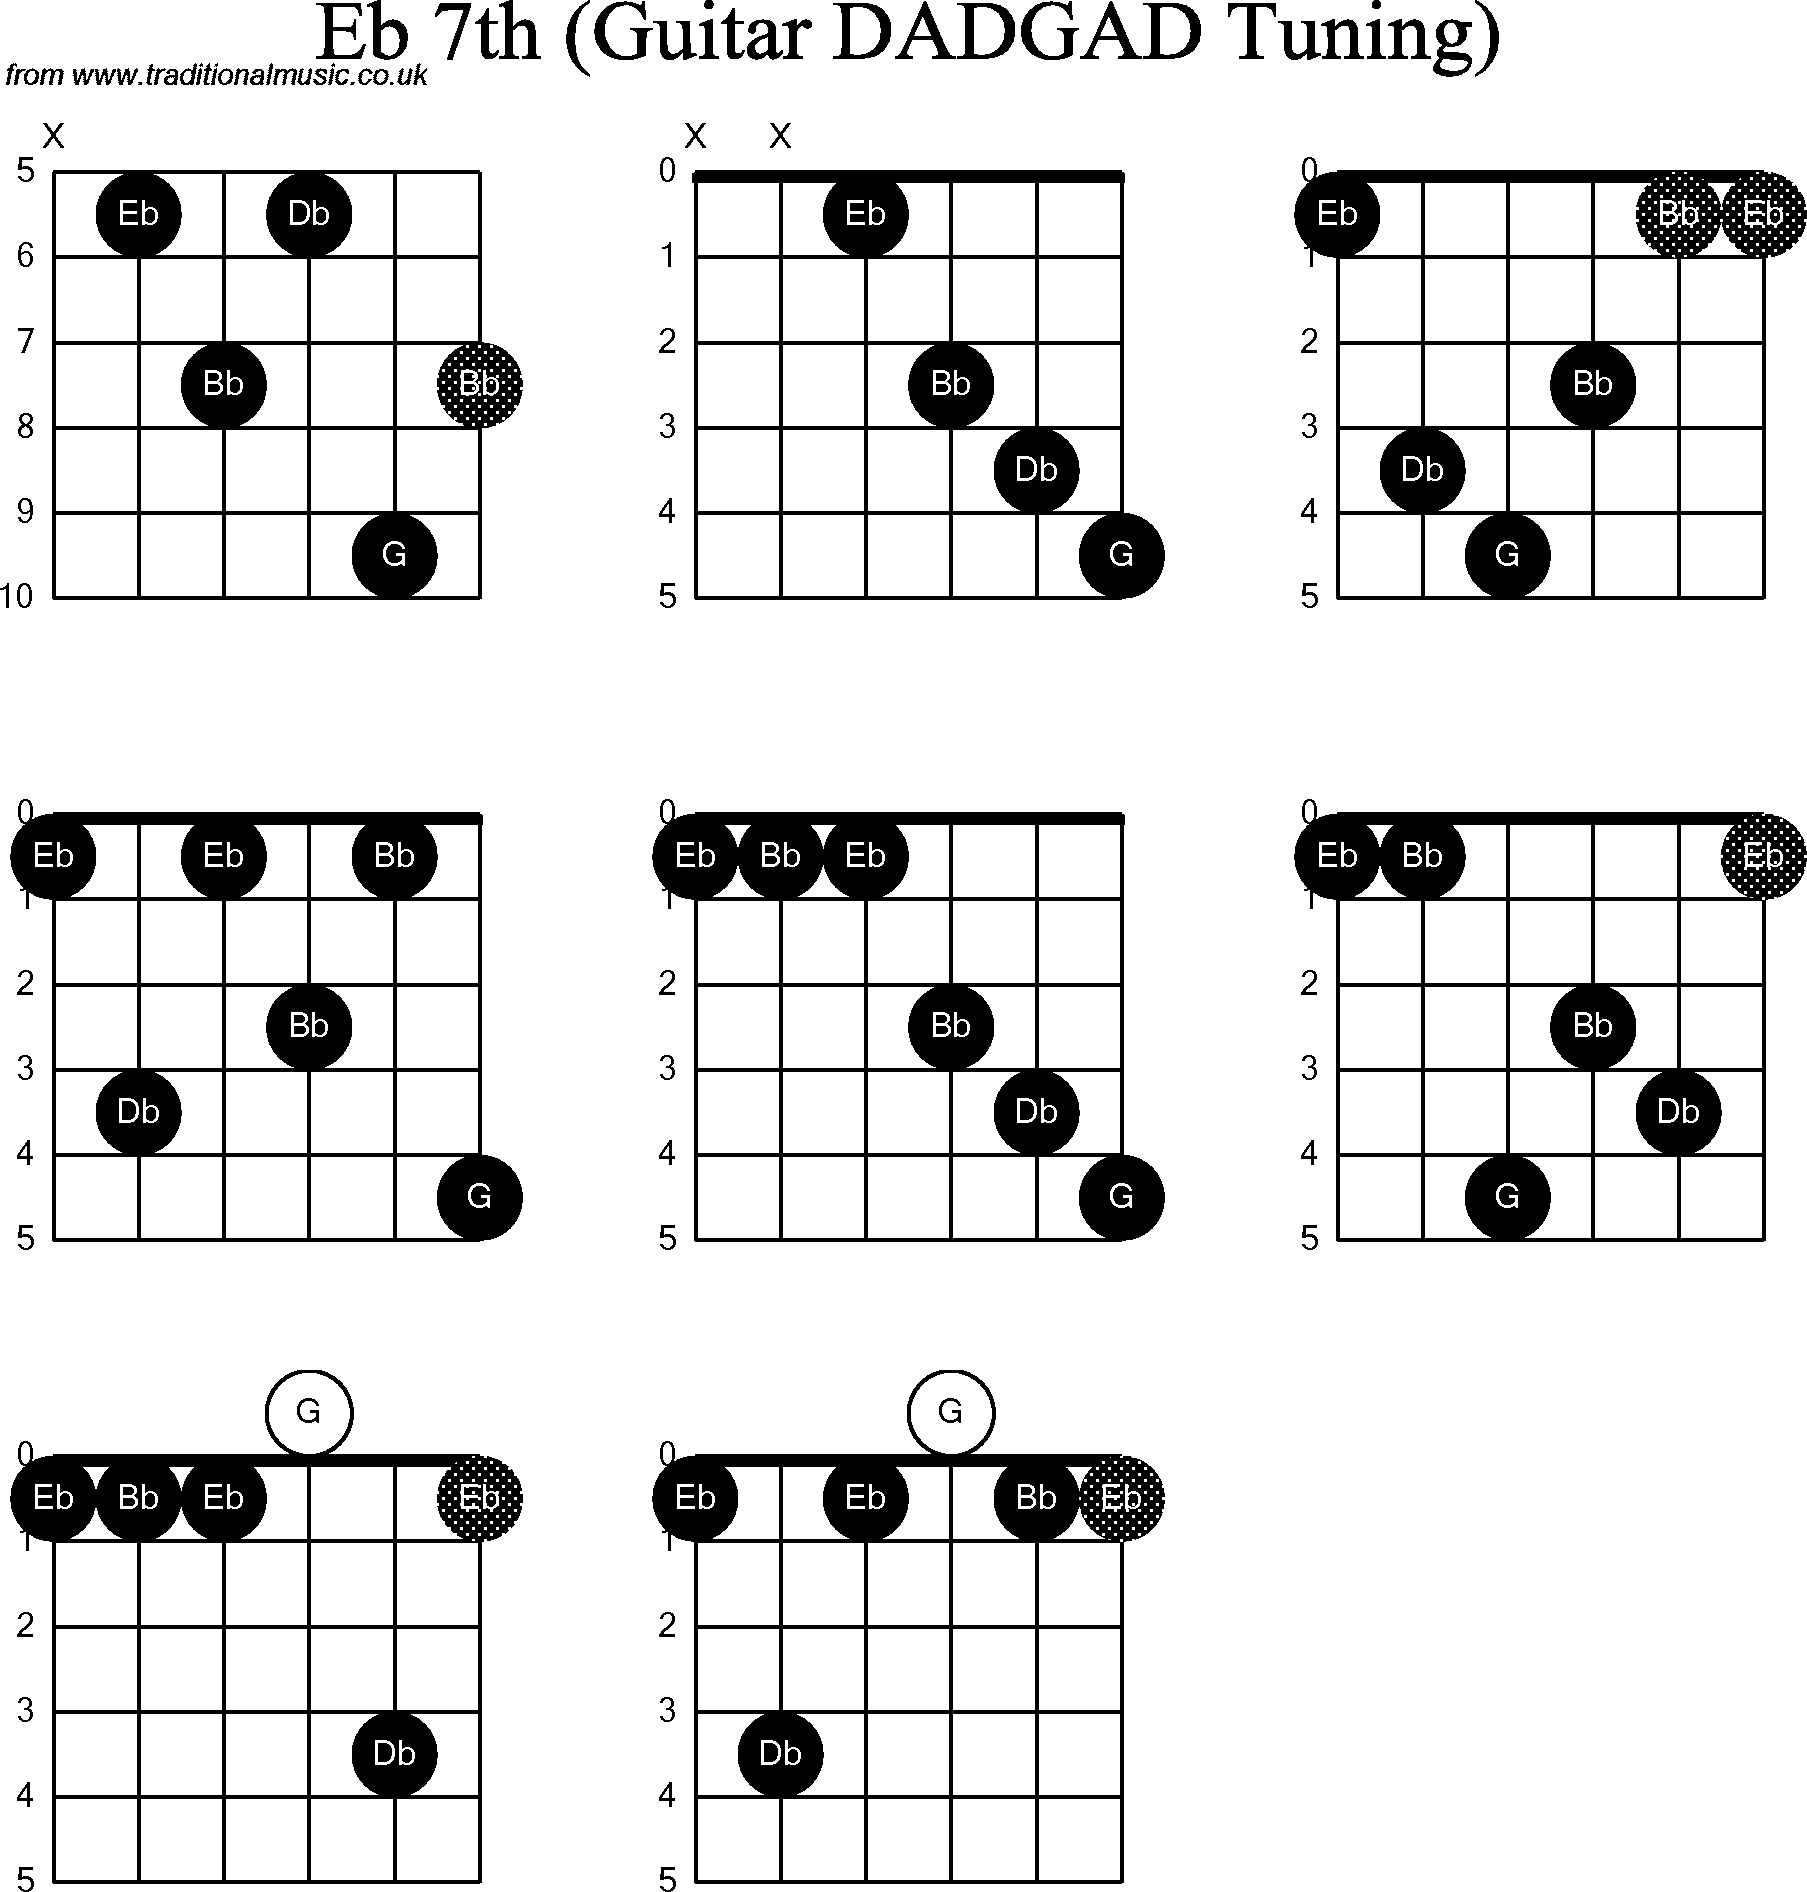 Chord Diagrams for D Modal Guitar(DADGAD), Eb7th